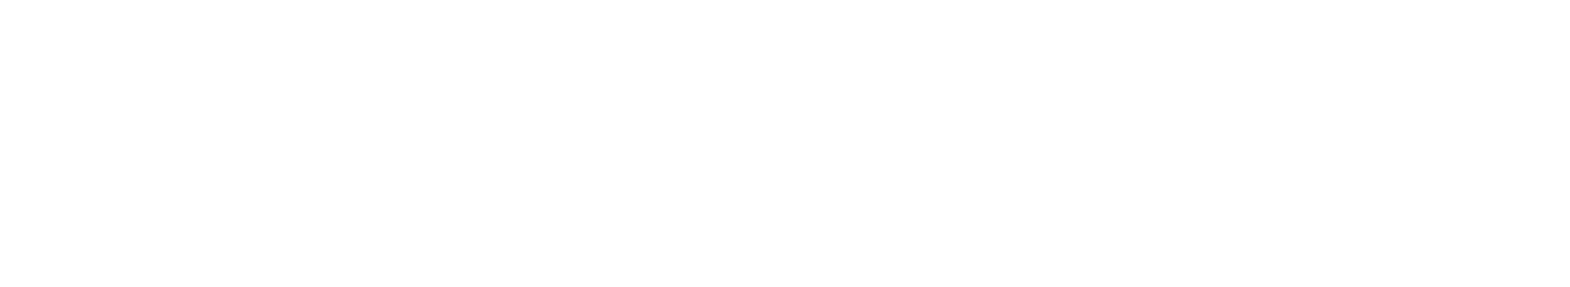 WordStream.com